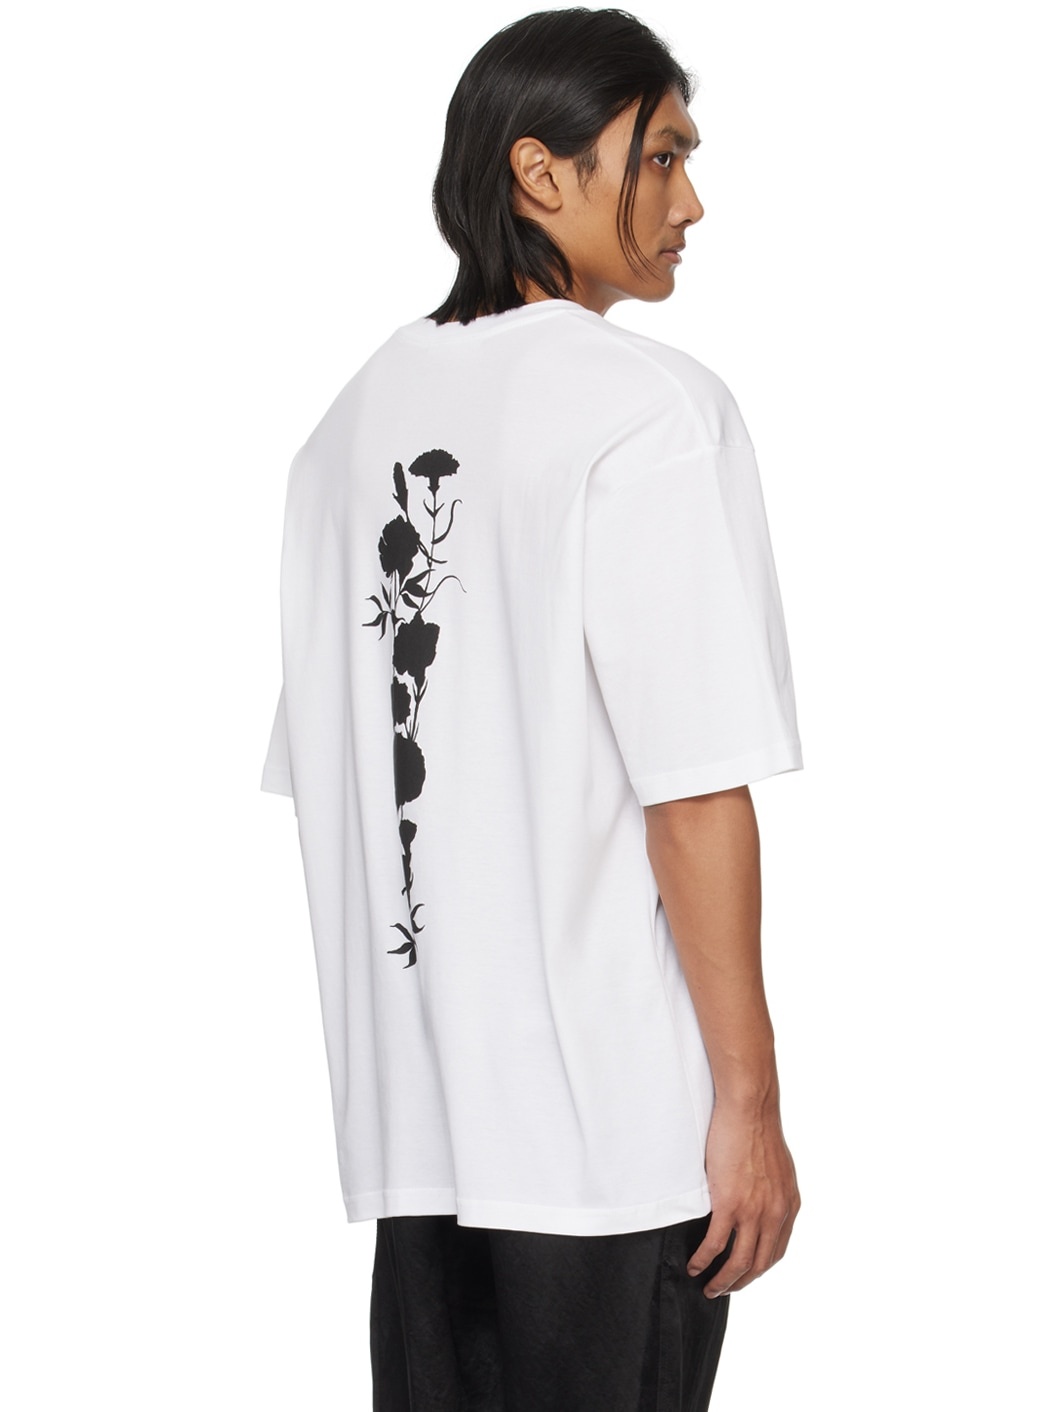 White Graphic T-Shirt - 3